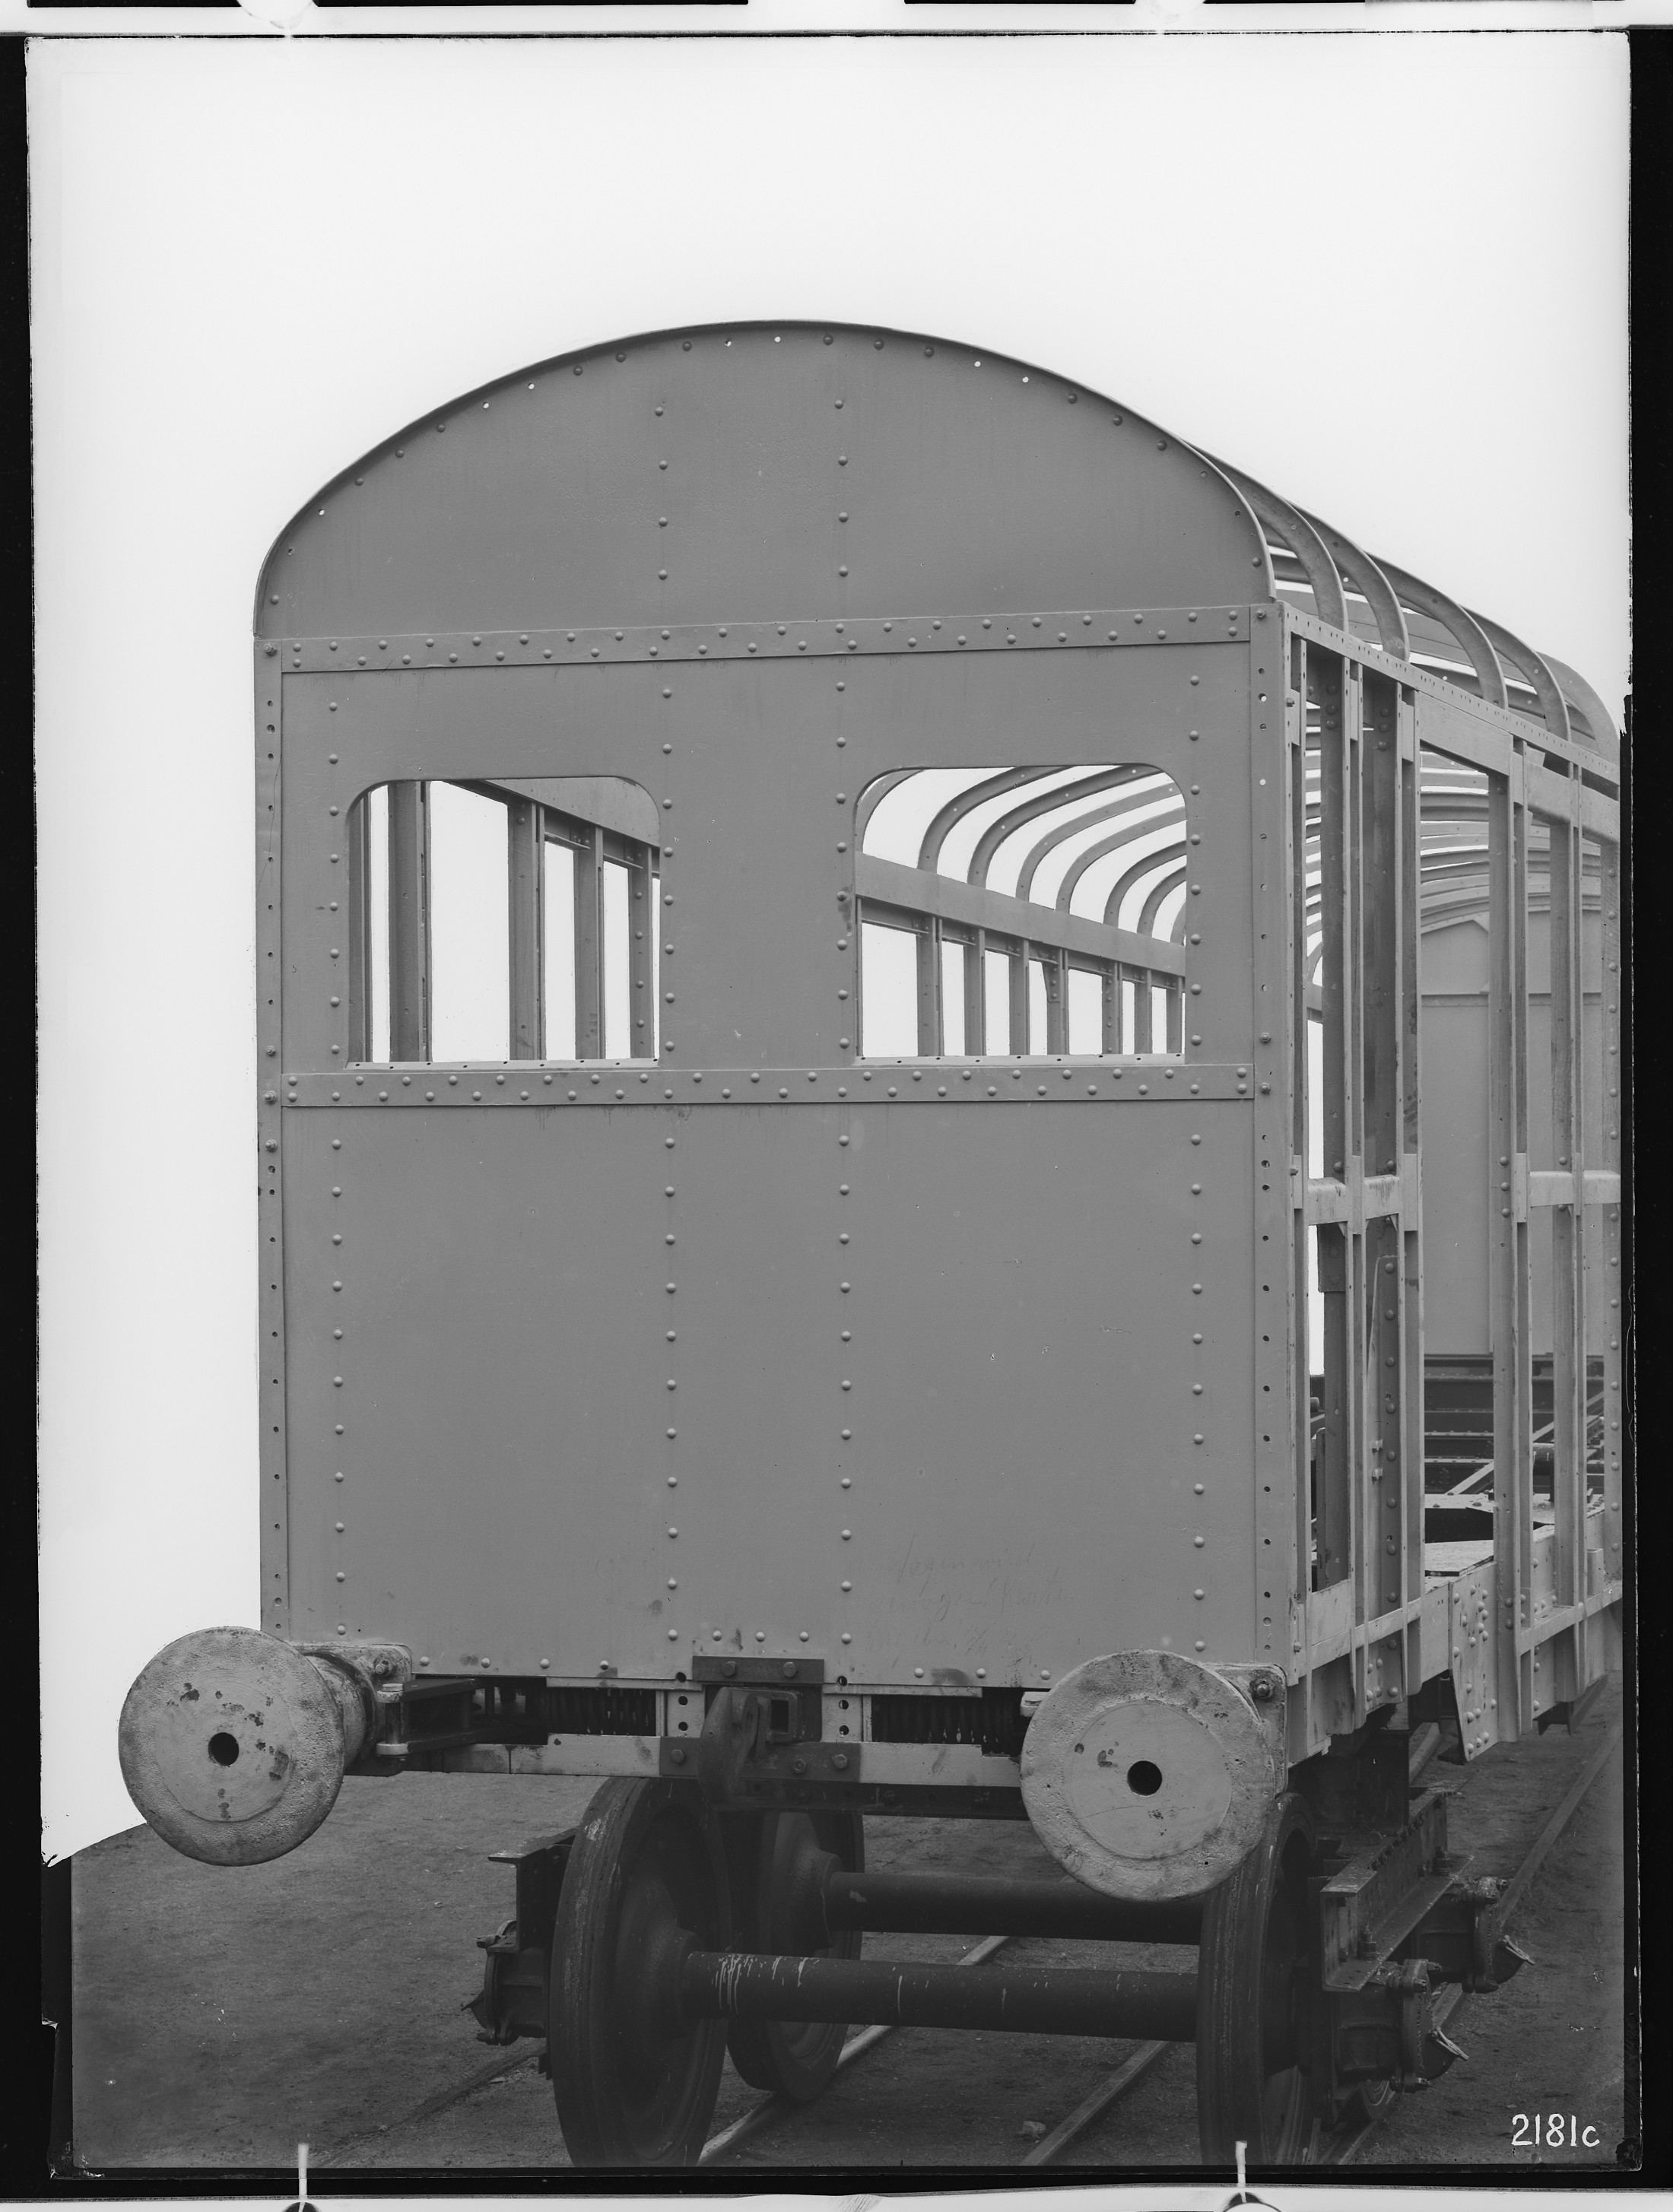 Fotografie: vierachsiger Triebwagen A-Zug (Rohbau der Stirnwand), 1922 (Schenkung der Bombardier Transportation, Werk Görlitz | Eigentum/Sammlung der Verkehrsmuseums Dresden gGmbH CC BY-NC-SA)